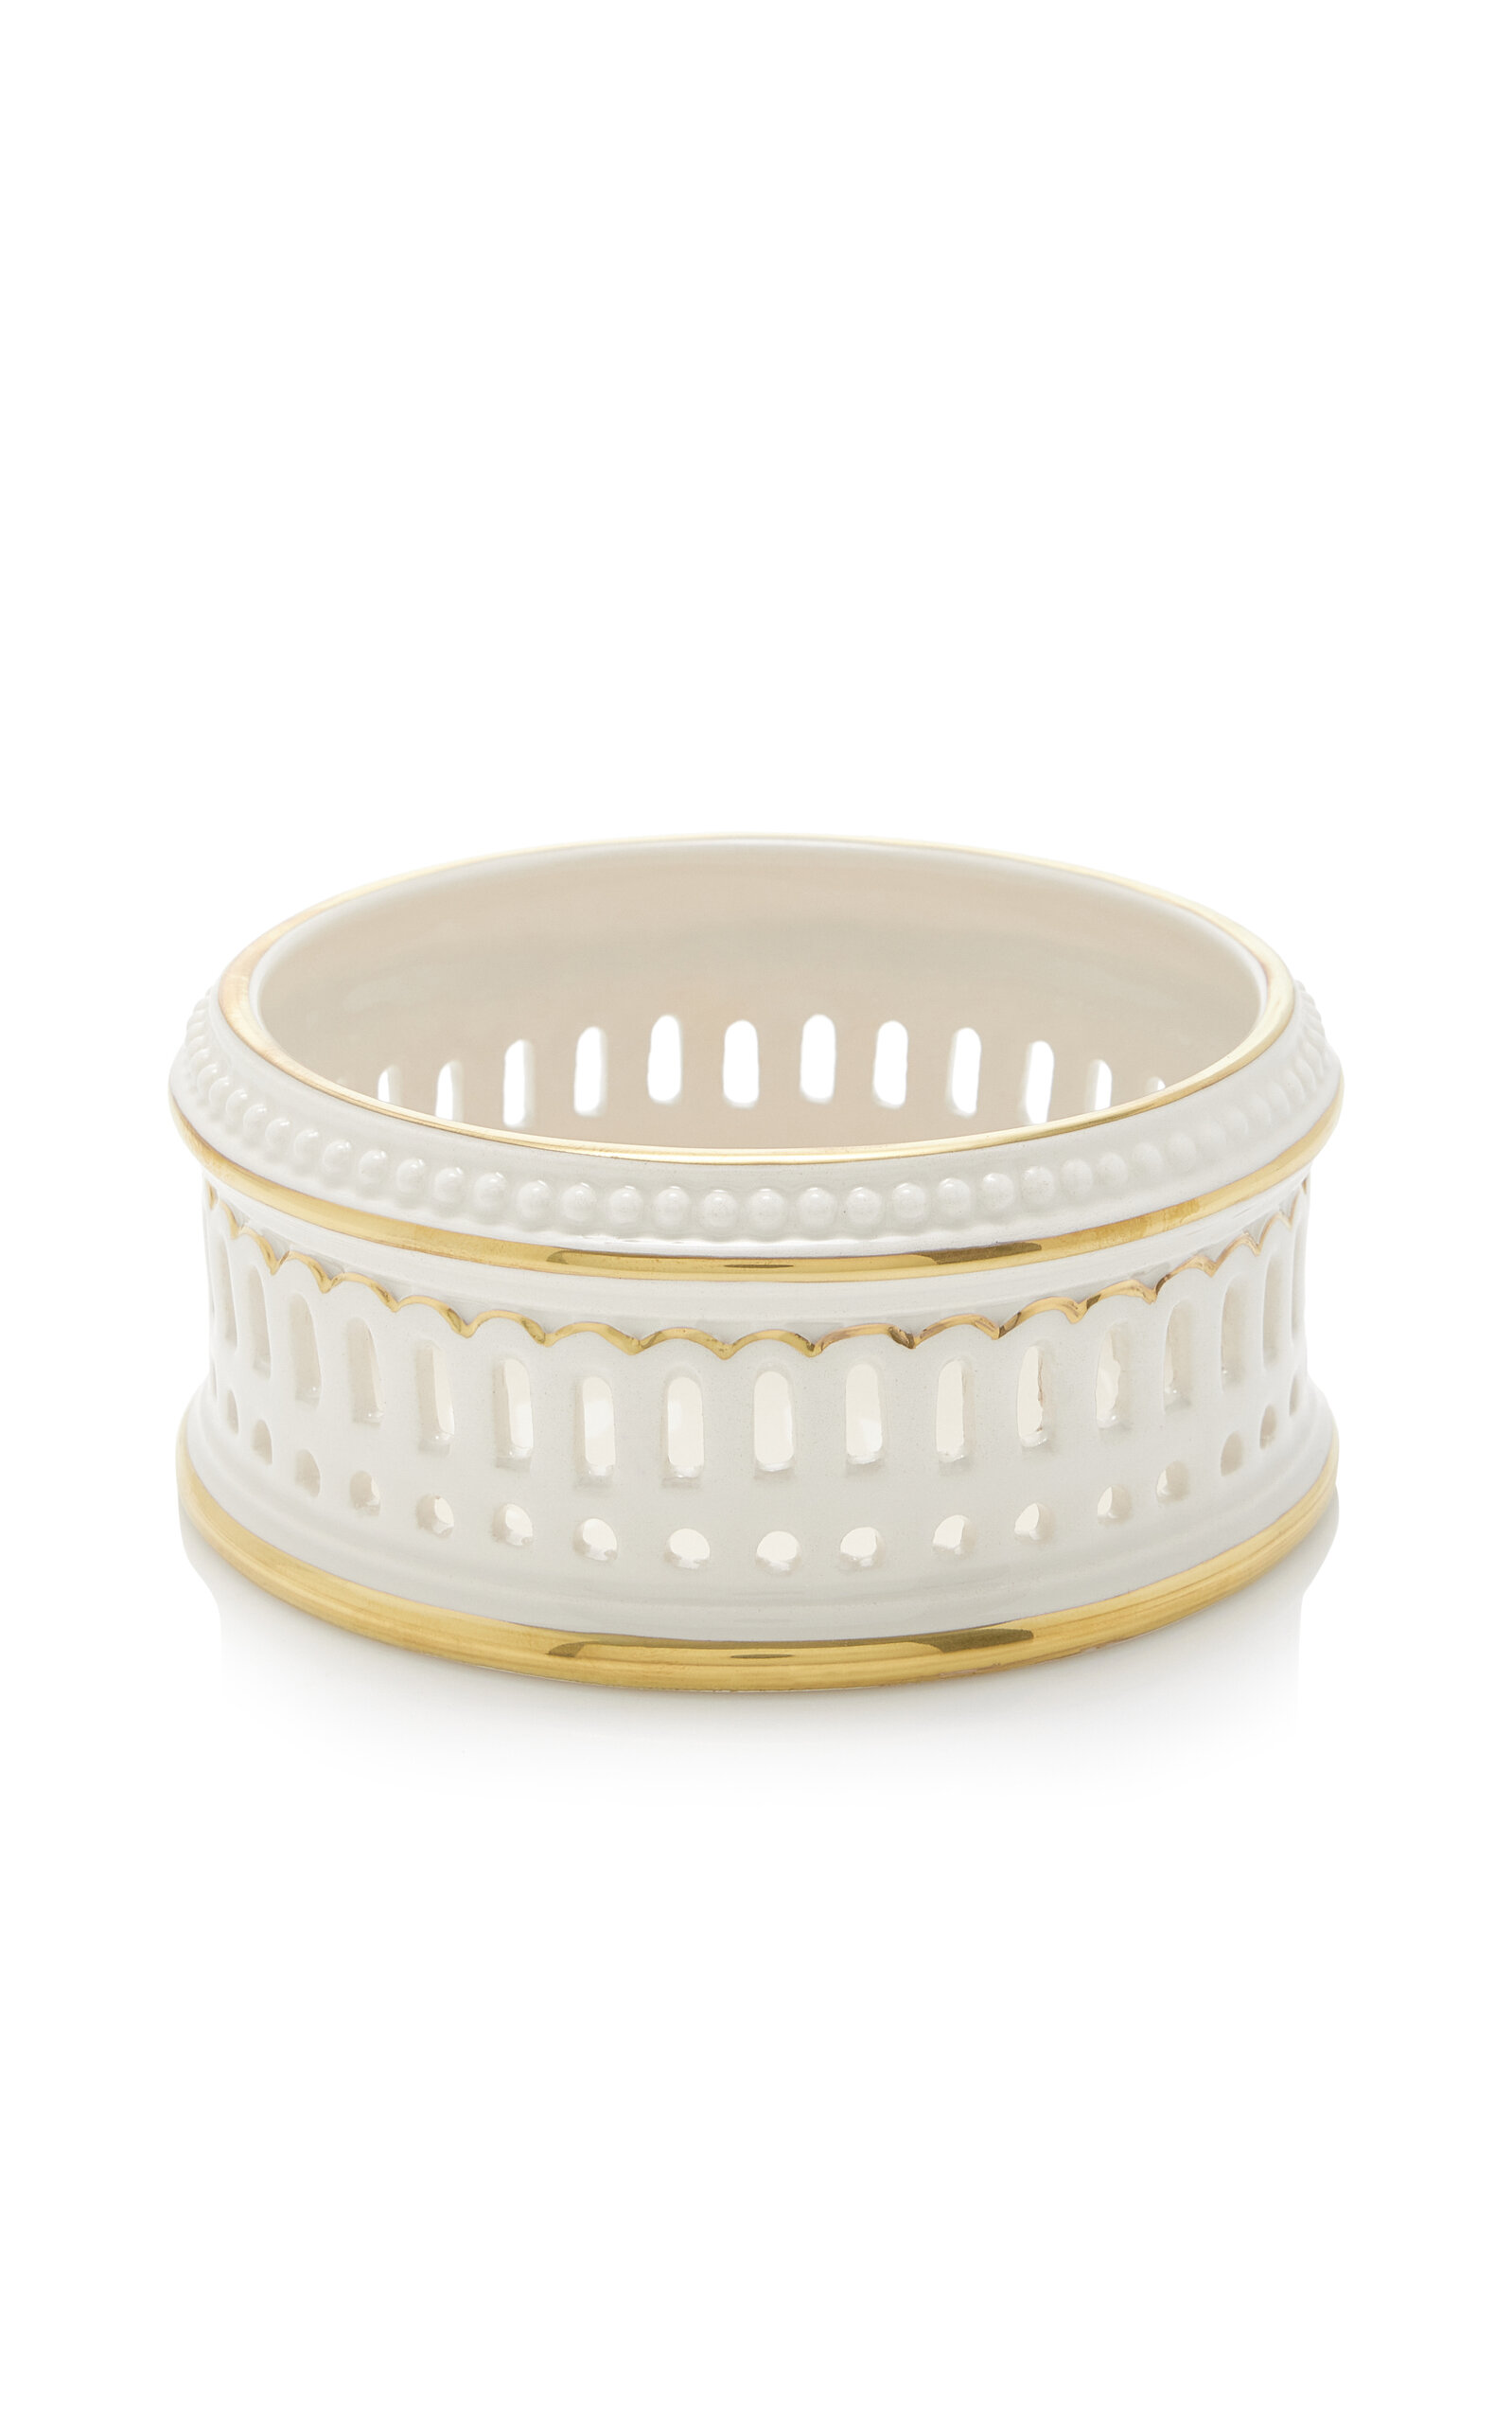 Moda Domus Portichetto Creamware Coaster In Gold